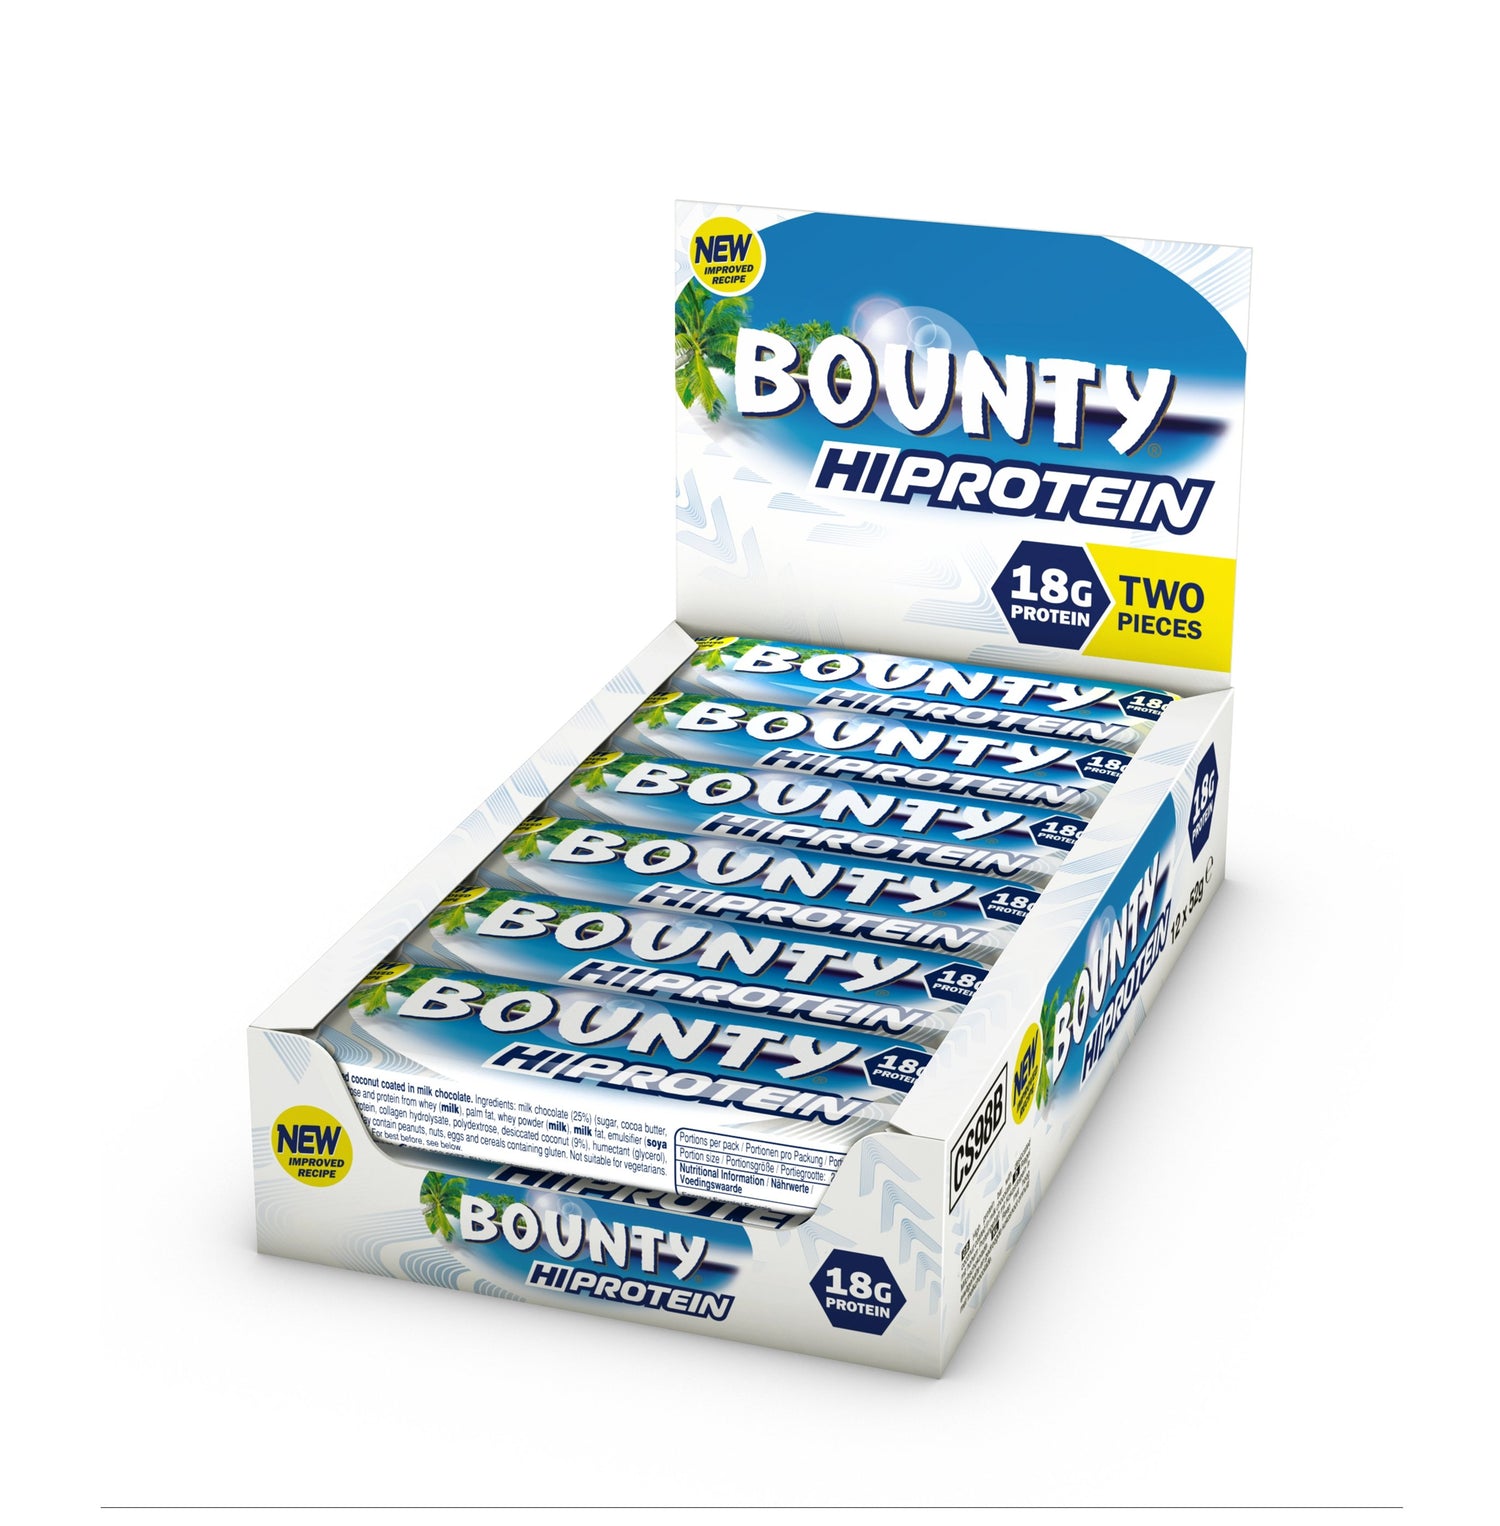 НОВІ протеїнові батончики Bounty Hi (12 х 52 г) - theskinnyfoodco